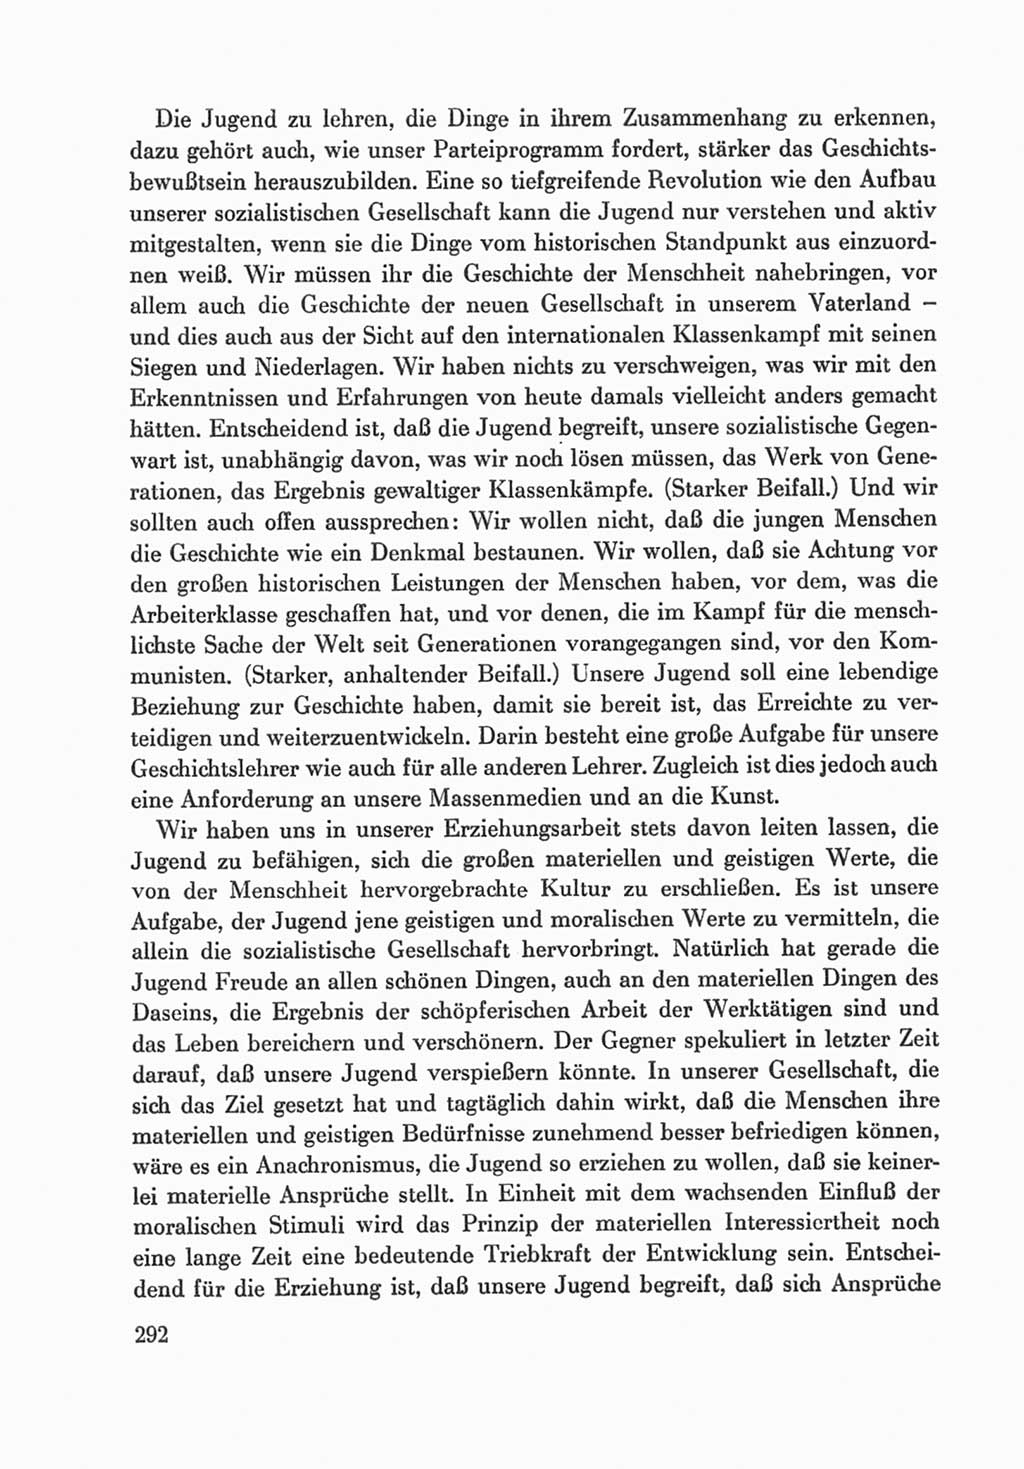 Protokoll der Verhandlungen des Ⅸ. Parteitages der Sozialistischen Einheitspartei Deutschlands (SED) [Deutsche Demokratische Republik (DDR)] 1976, Band 1, Seite 292 (Prot. Verh. Ⅸ. PT SED DDR 1976, Bd. 1, S. 292)